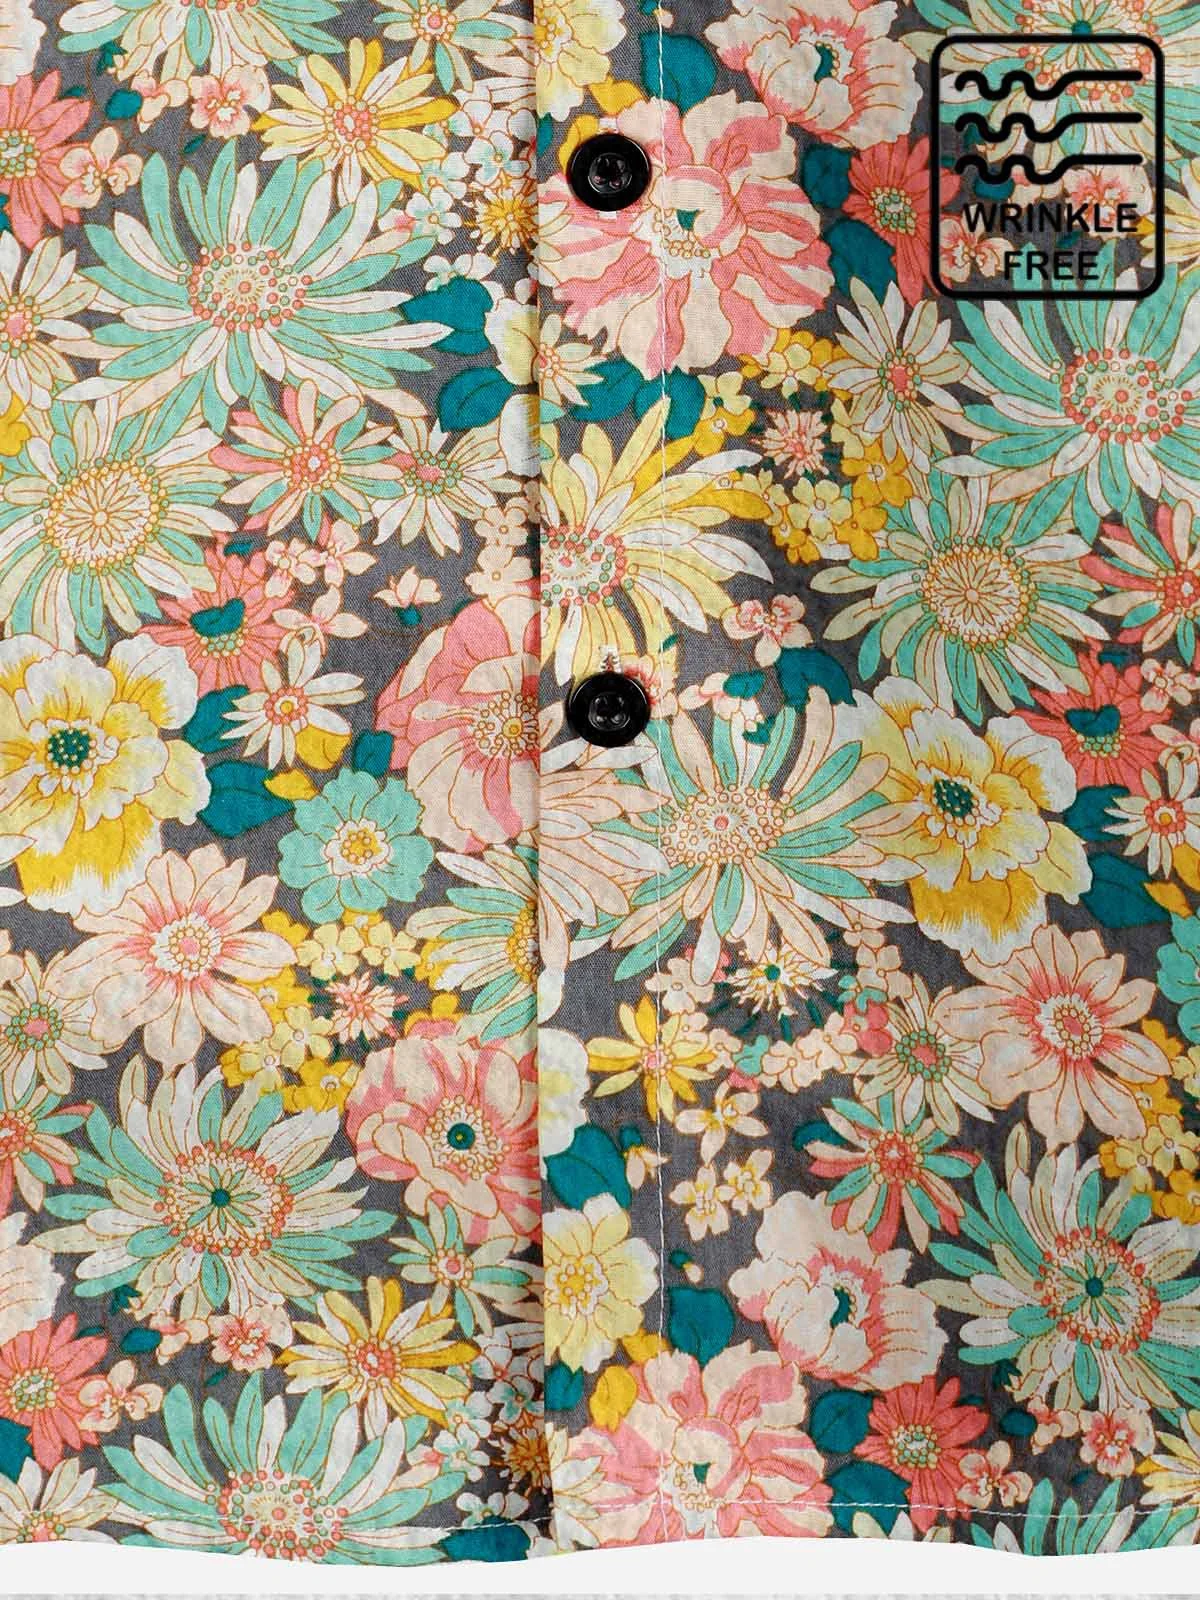 Men's Vintage Casual Wrinkle Free Hawaiian Shirts Floral Print SeersuckerPlus Size Tops